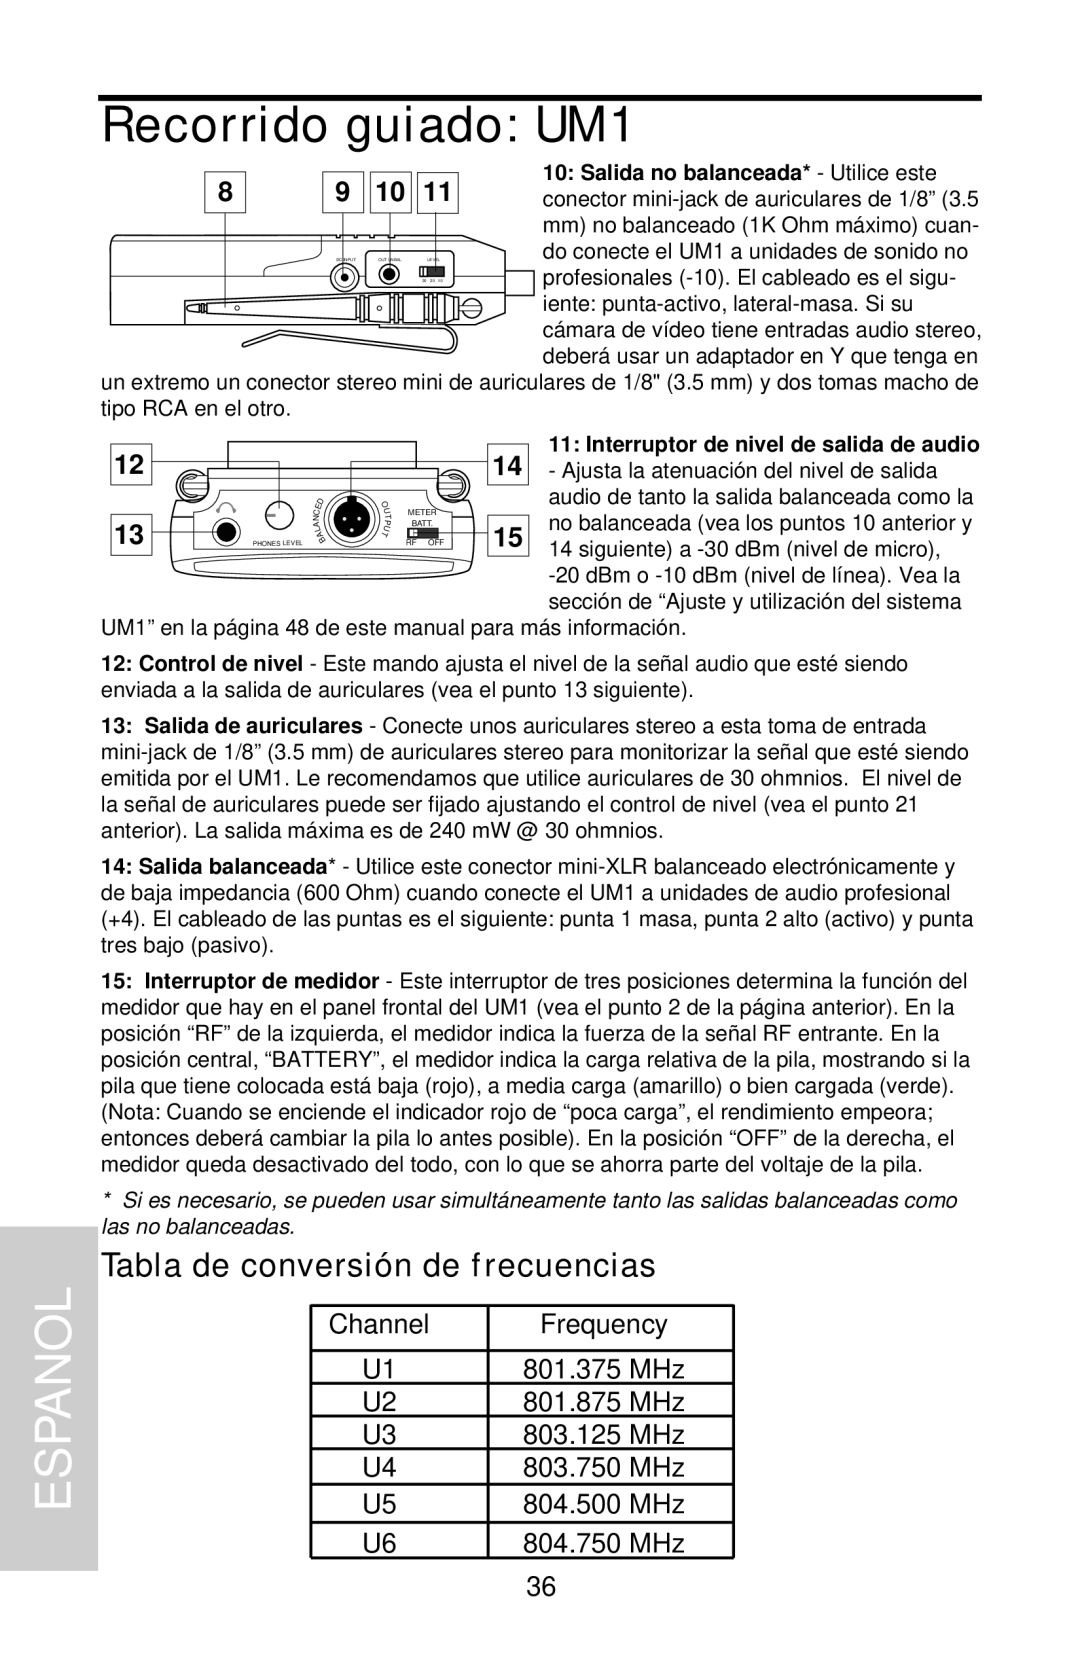 Samson UHF Series One owner manual Tabla de conversión de frecuencias, Recorrido guiado UM1, Espanol 